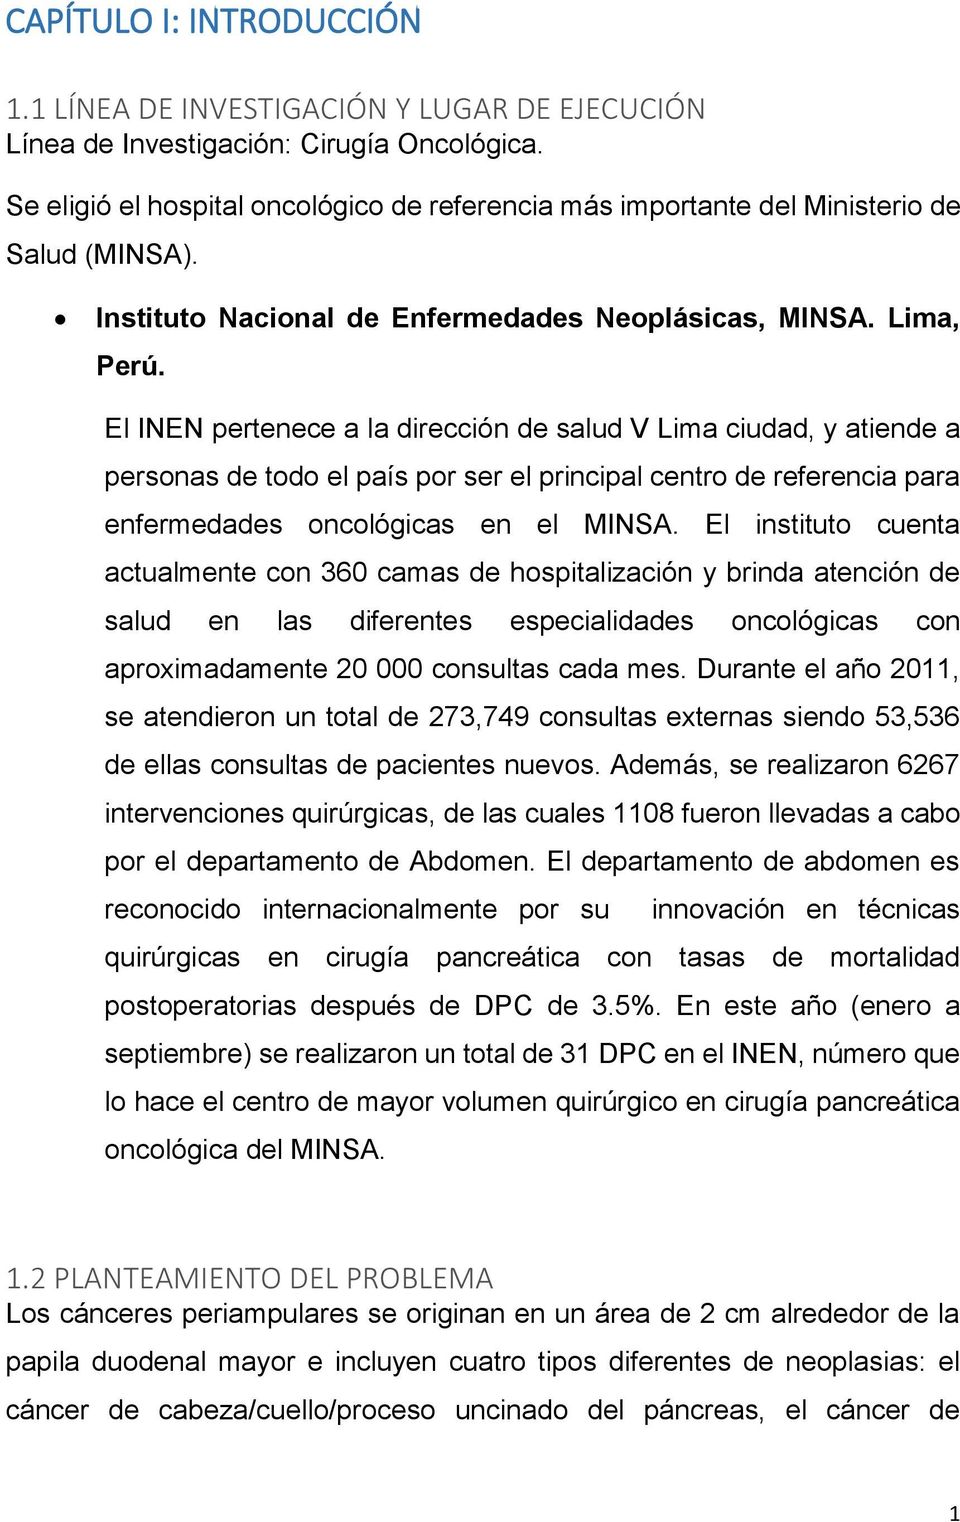 El INEN pertenece a la dirección de salud V Lima ciudad, y atiende a personas de todo el país por ser el principal centro de referencia para enfermedades oncológicas en el MINSA.